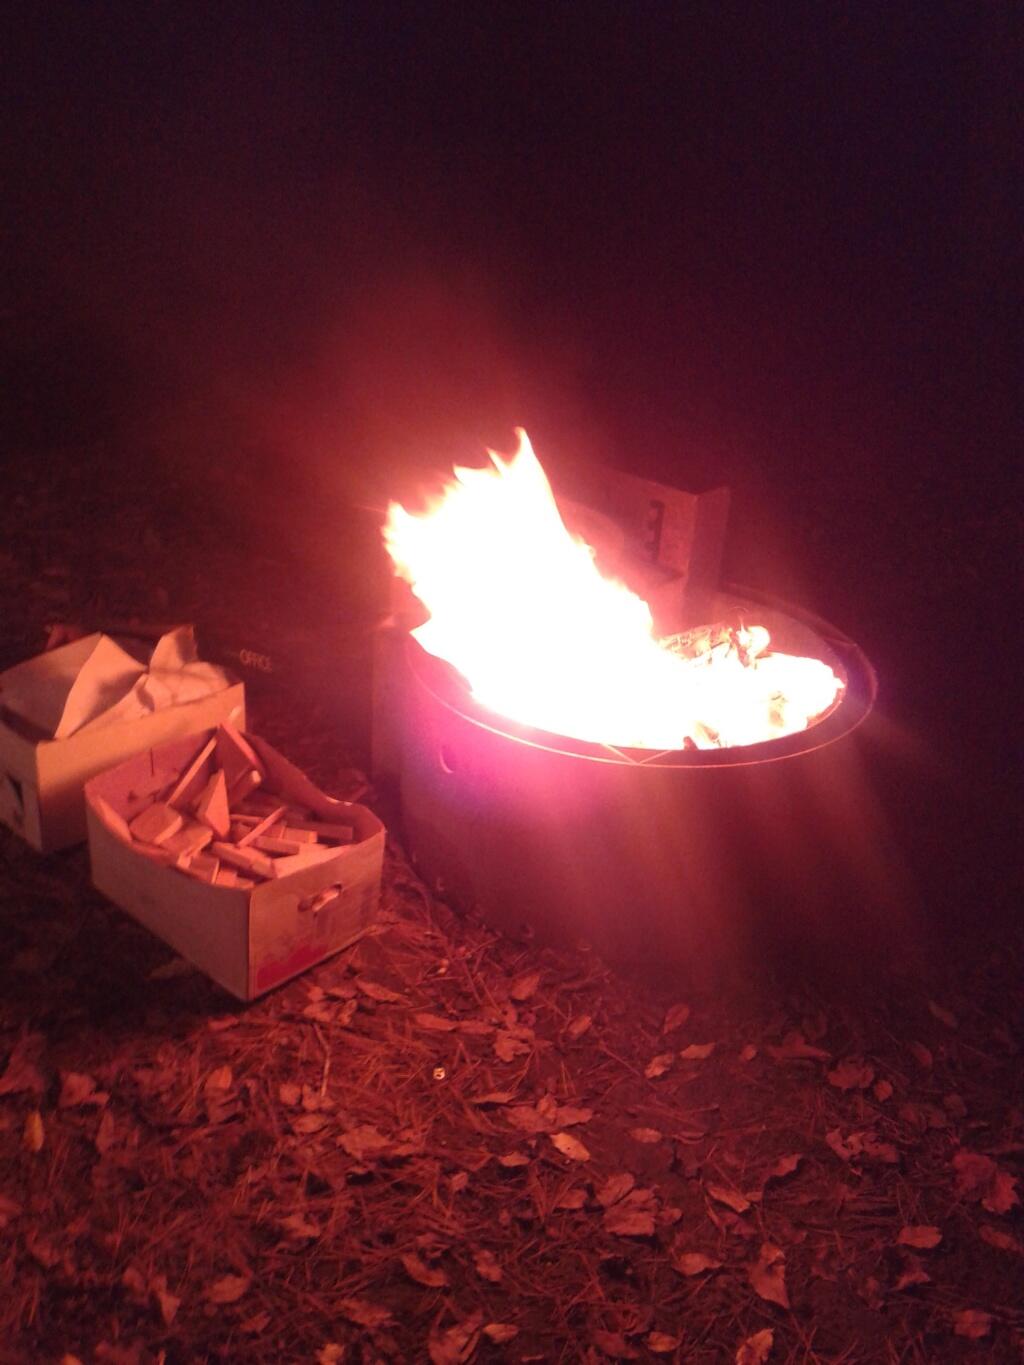  Scrap Wood and Paper Makes a Big Fire